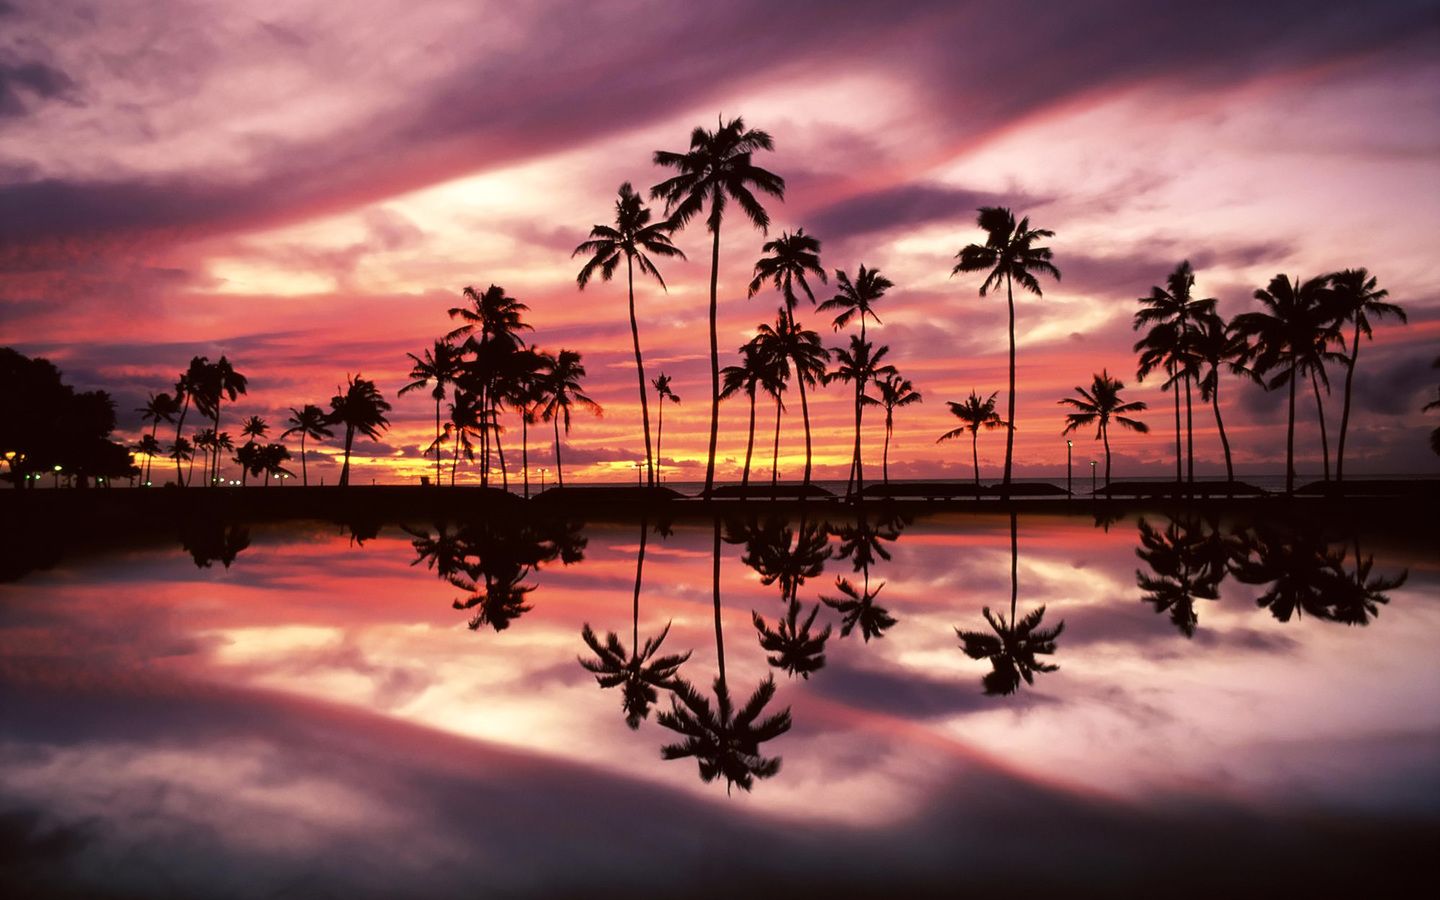 Sunset over the Ala Moana Beach Park, Honolulu, Oahu, Hawaii ...